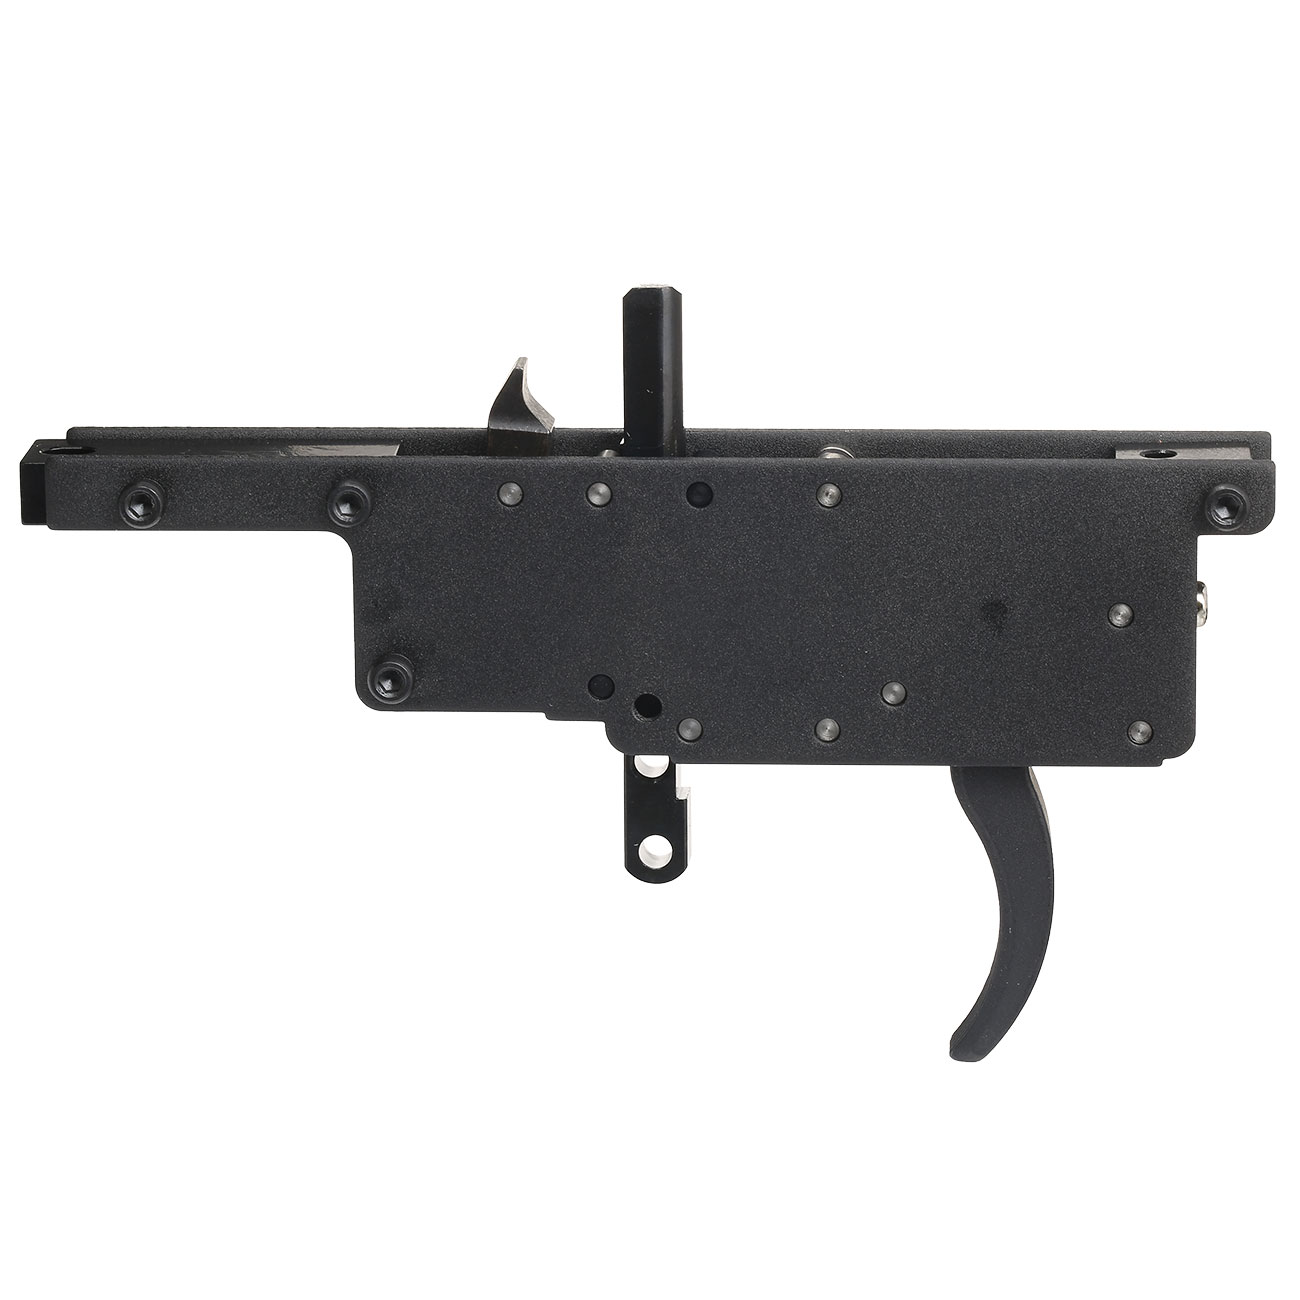 Action Army Zero S-Trigger 90 Grad Metall Abzugseinheit inkl. Piston Set f. TM VSR-10 Gewehre Bild 3